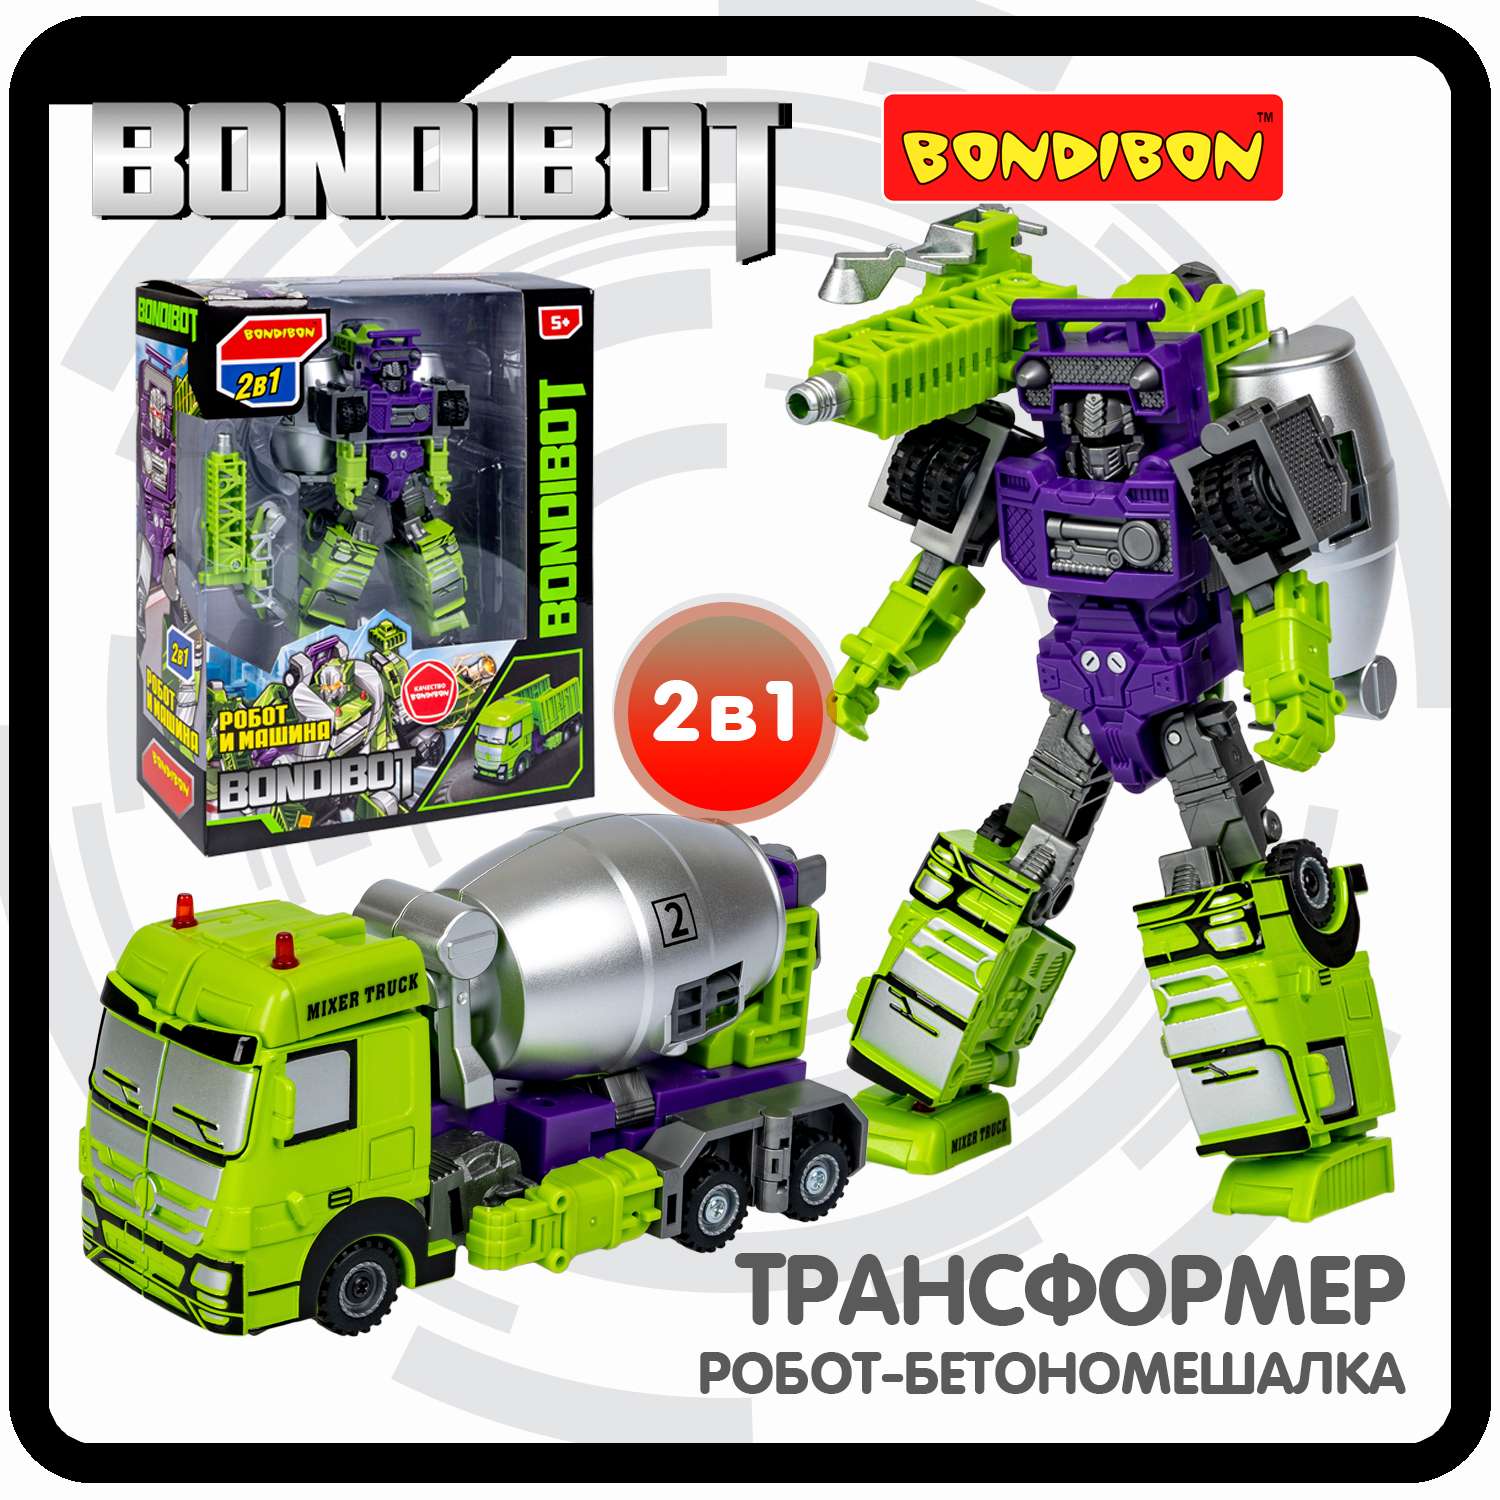 Трансформер BONDIBON BONDIBOT 2в1 робот- бетономешалка зелёного цвета - фото 1